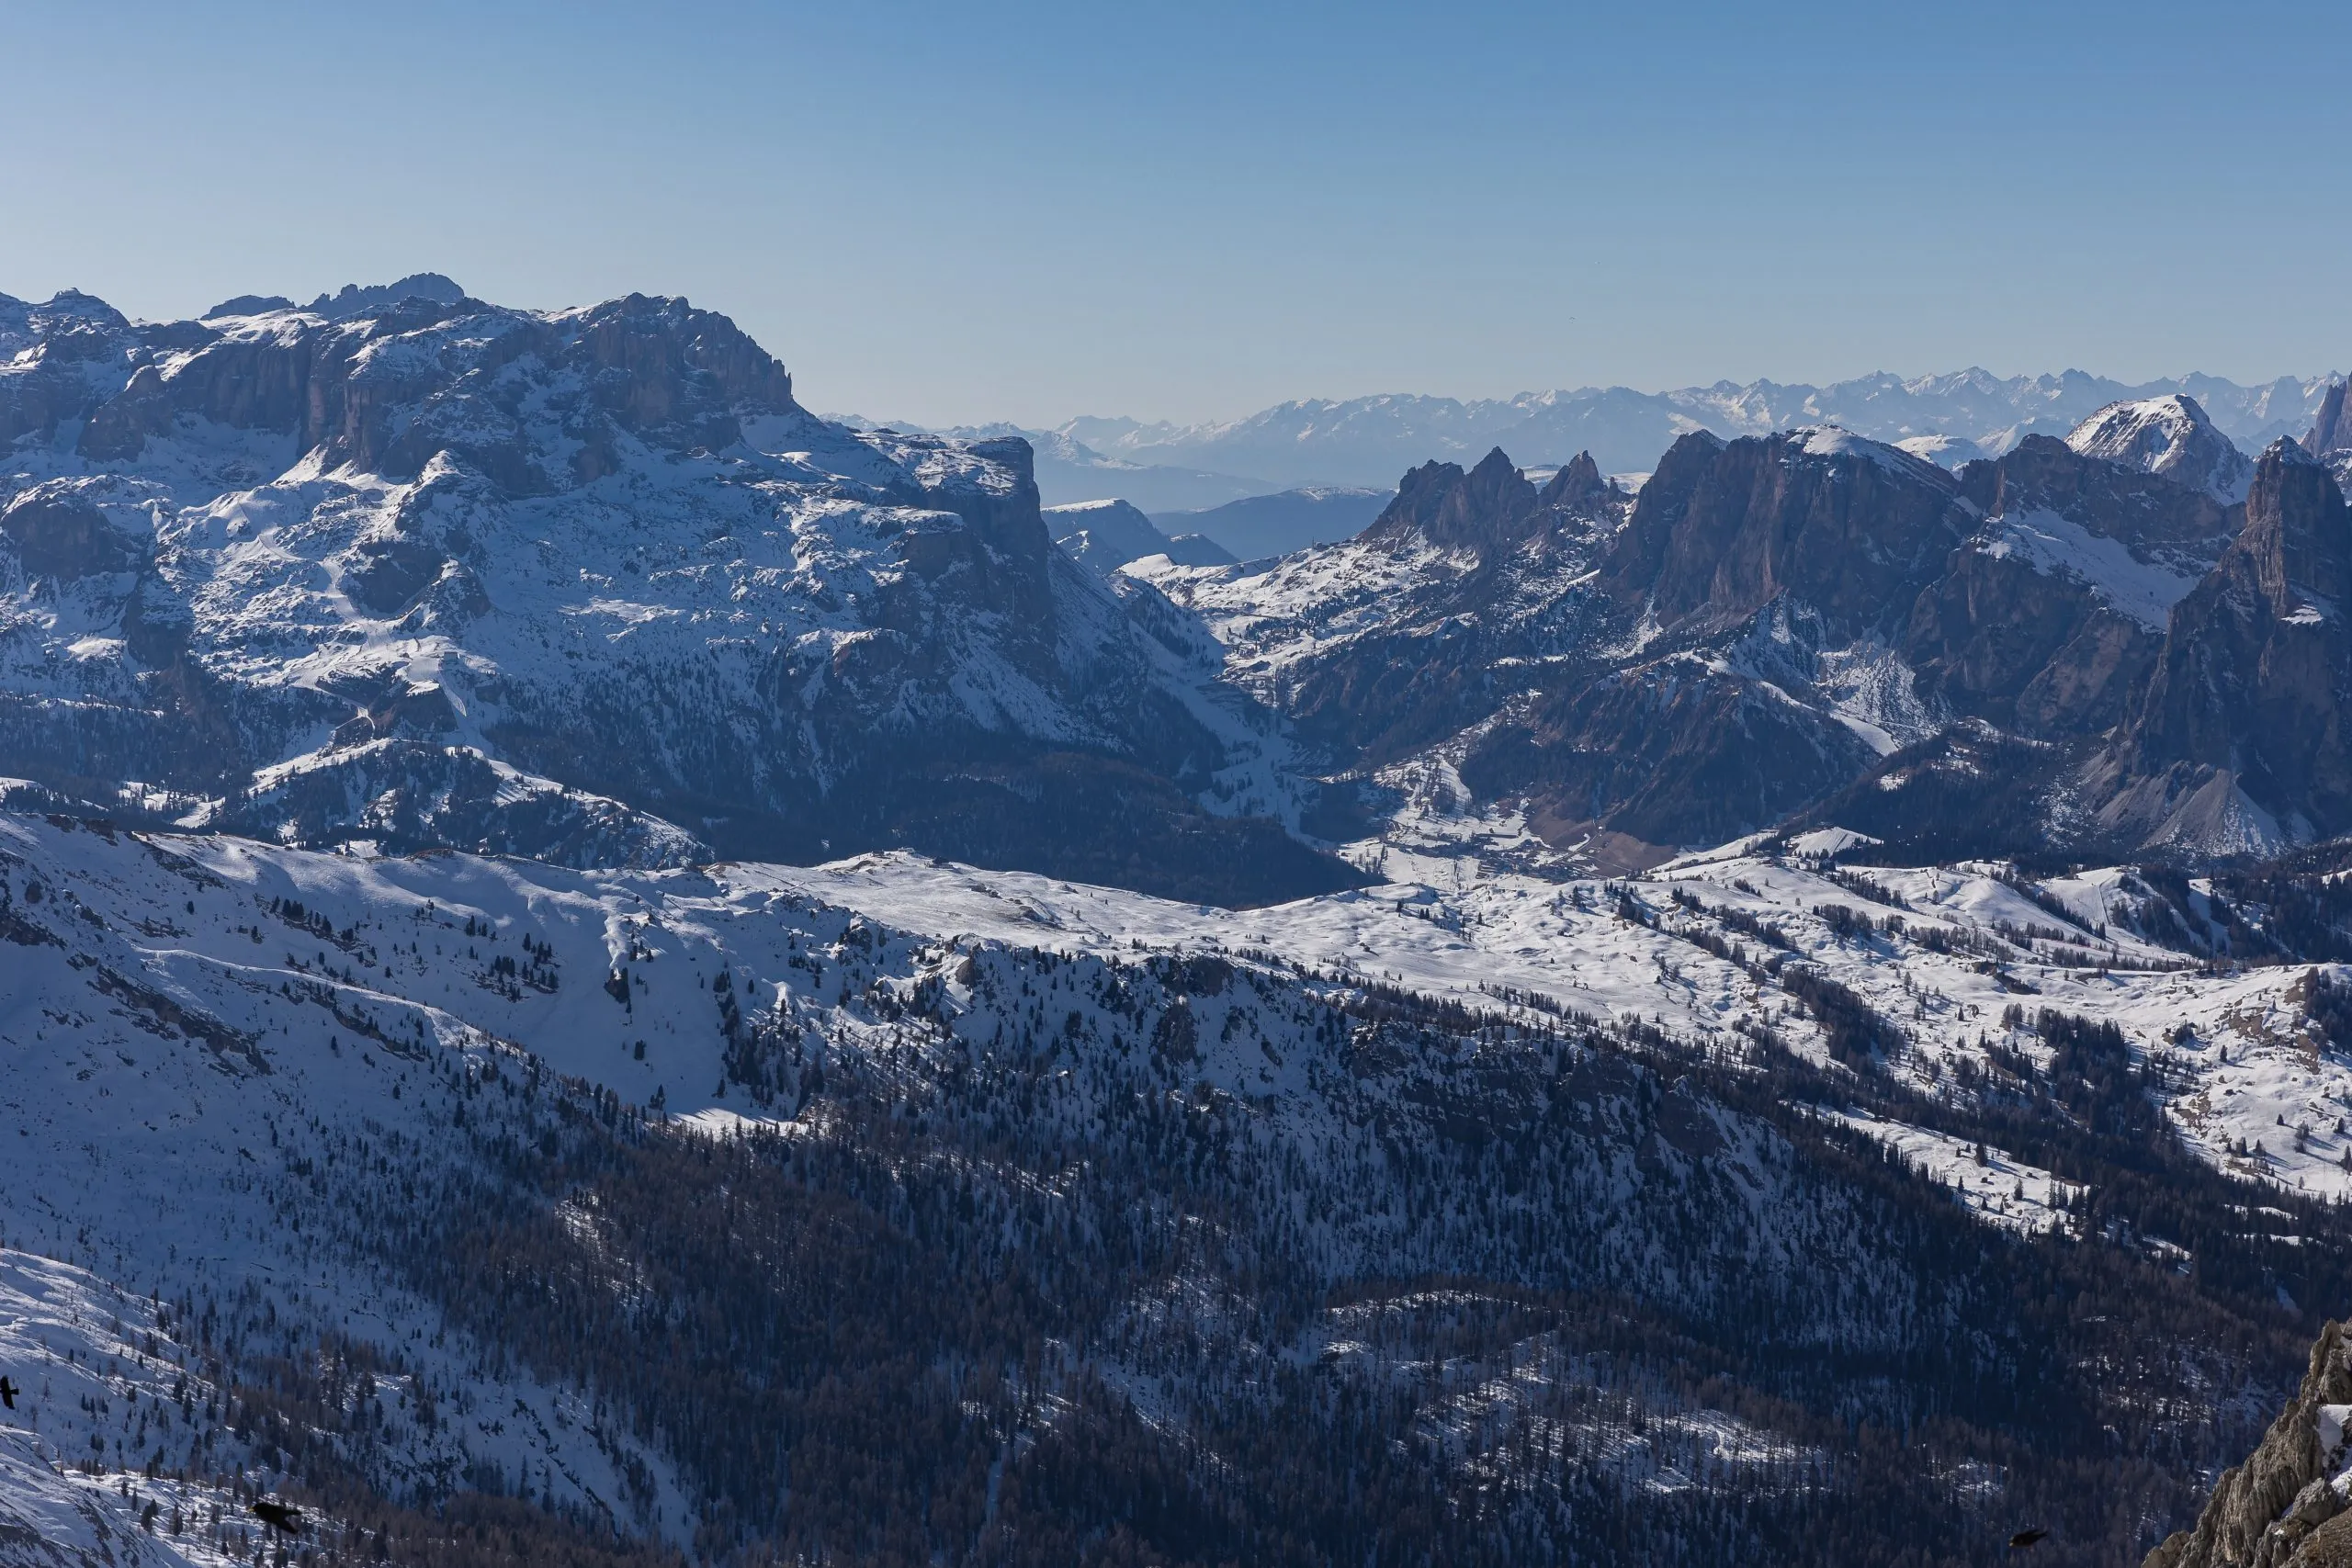 Monte Lagazuoi lies in Ski Resort Cortina d’Ampezzo, Belluno, Venetien Italy